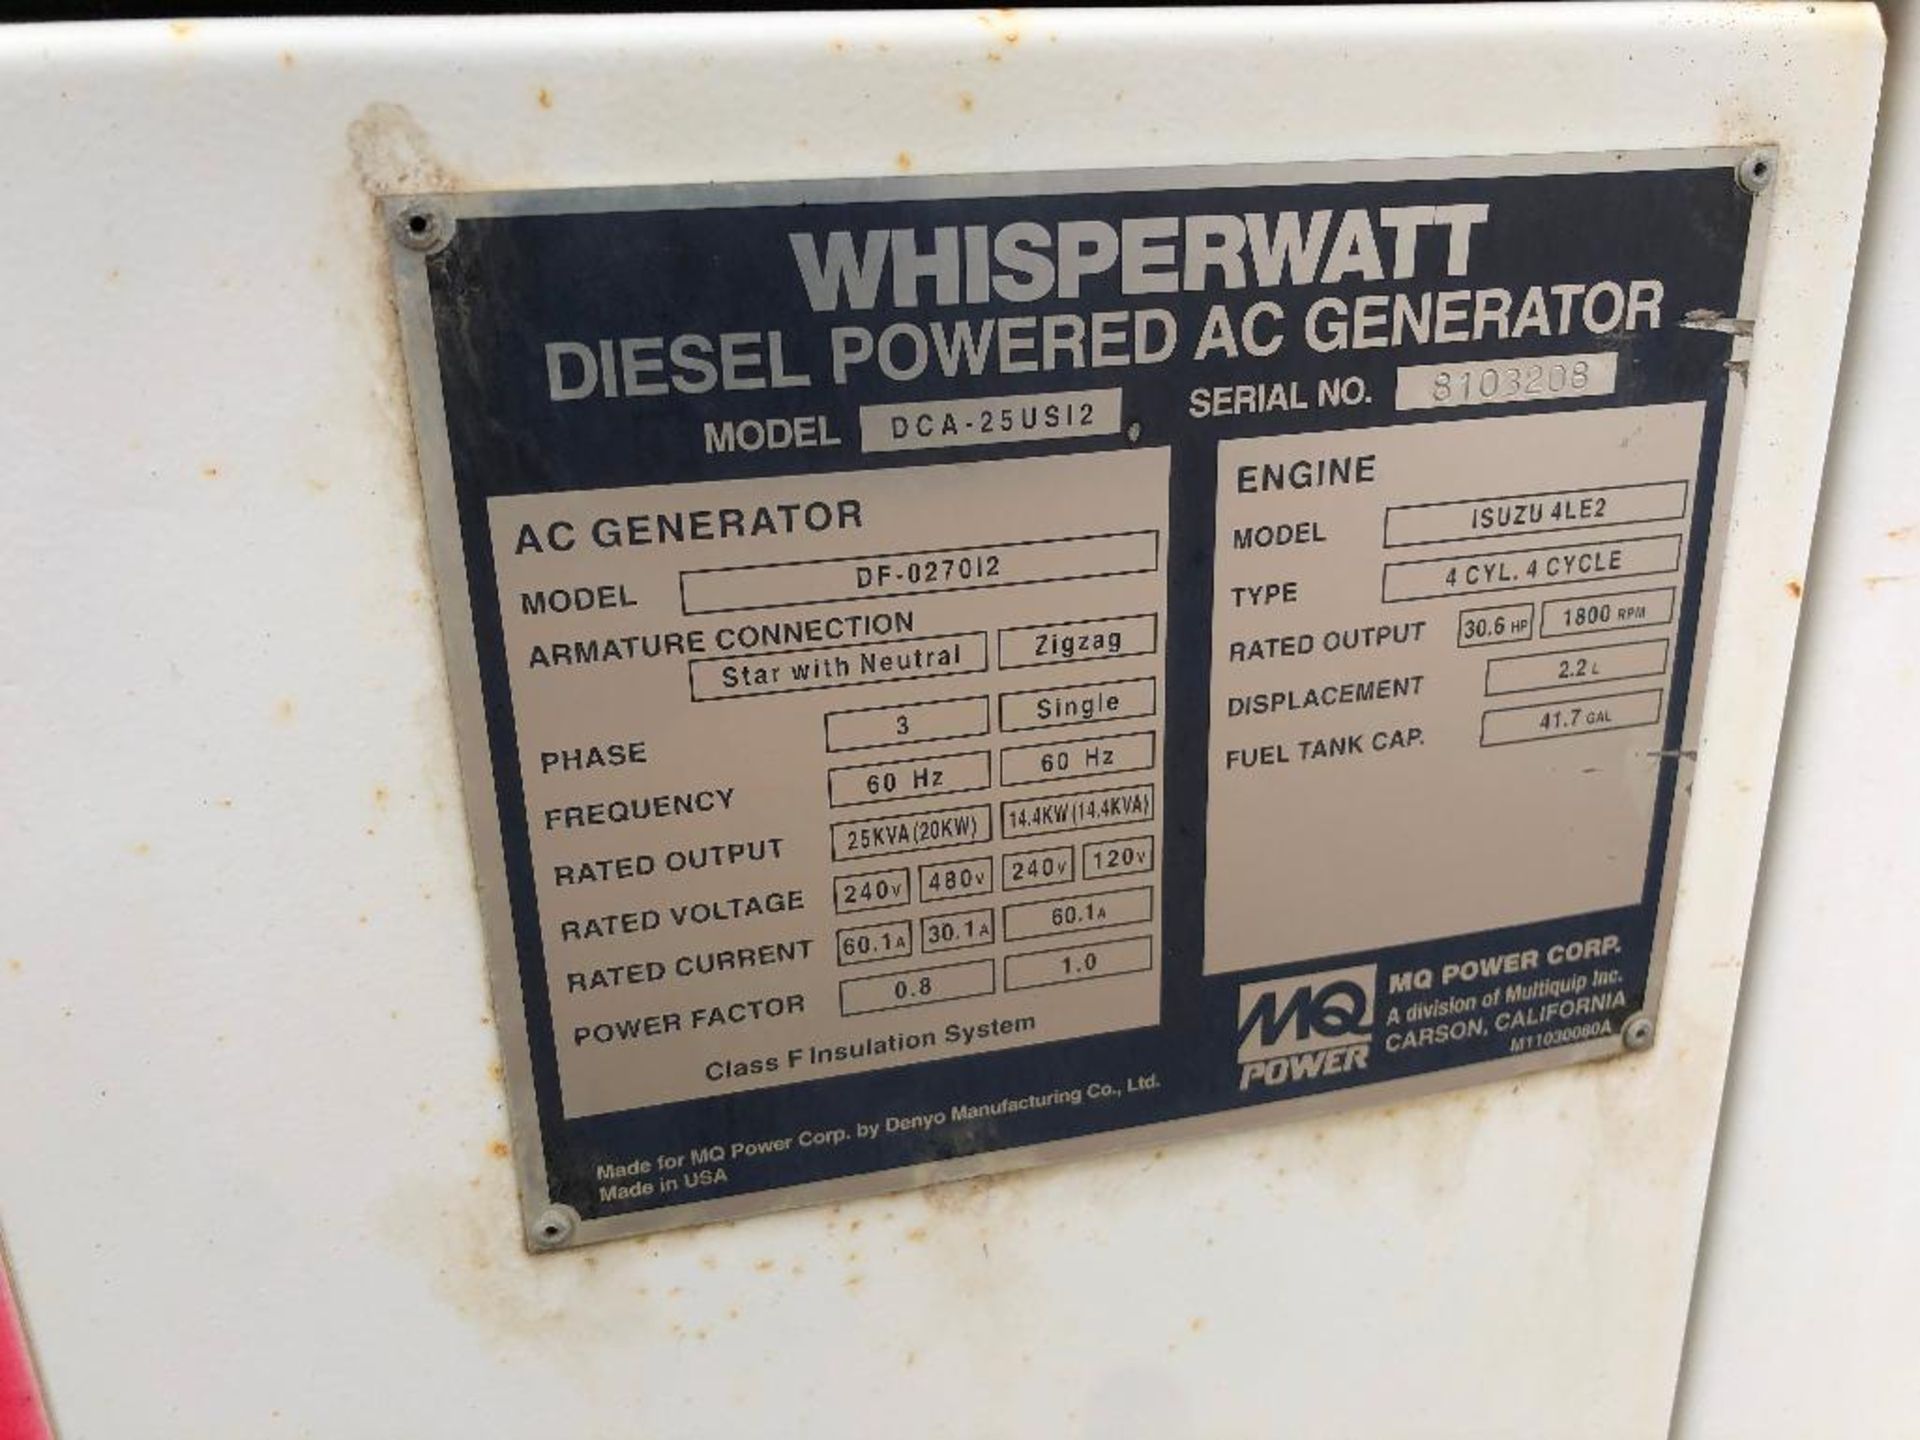 Whisperwatt 20kW DF-027012 Diesel Generator, 3PH, Isuzu 4LE2, 4,311hrs Showing - Image 5 of 9